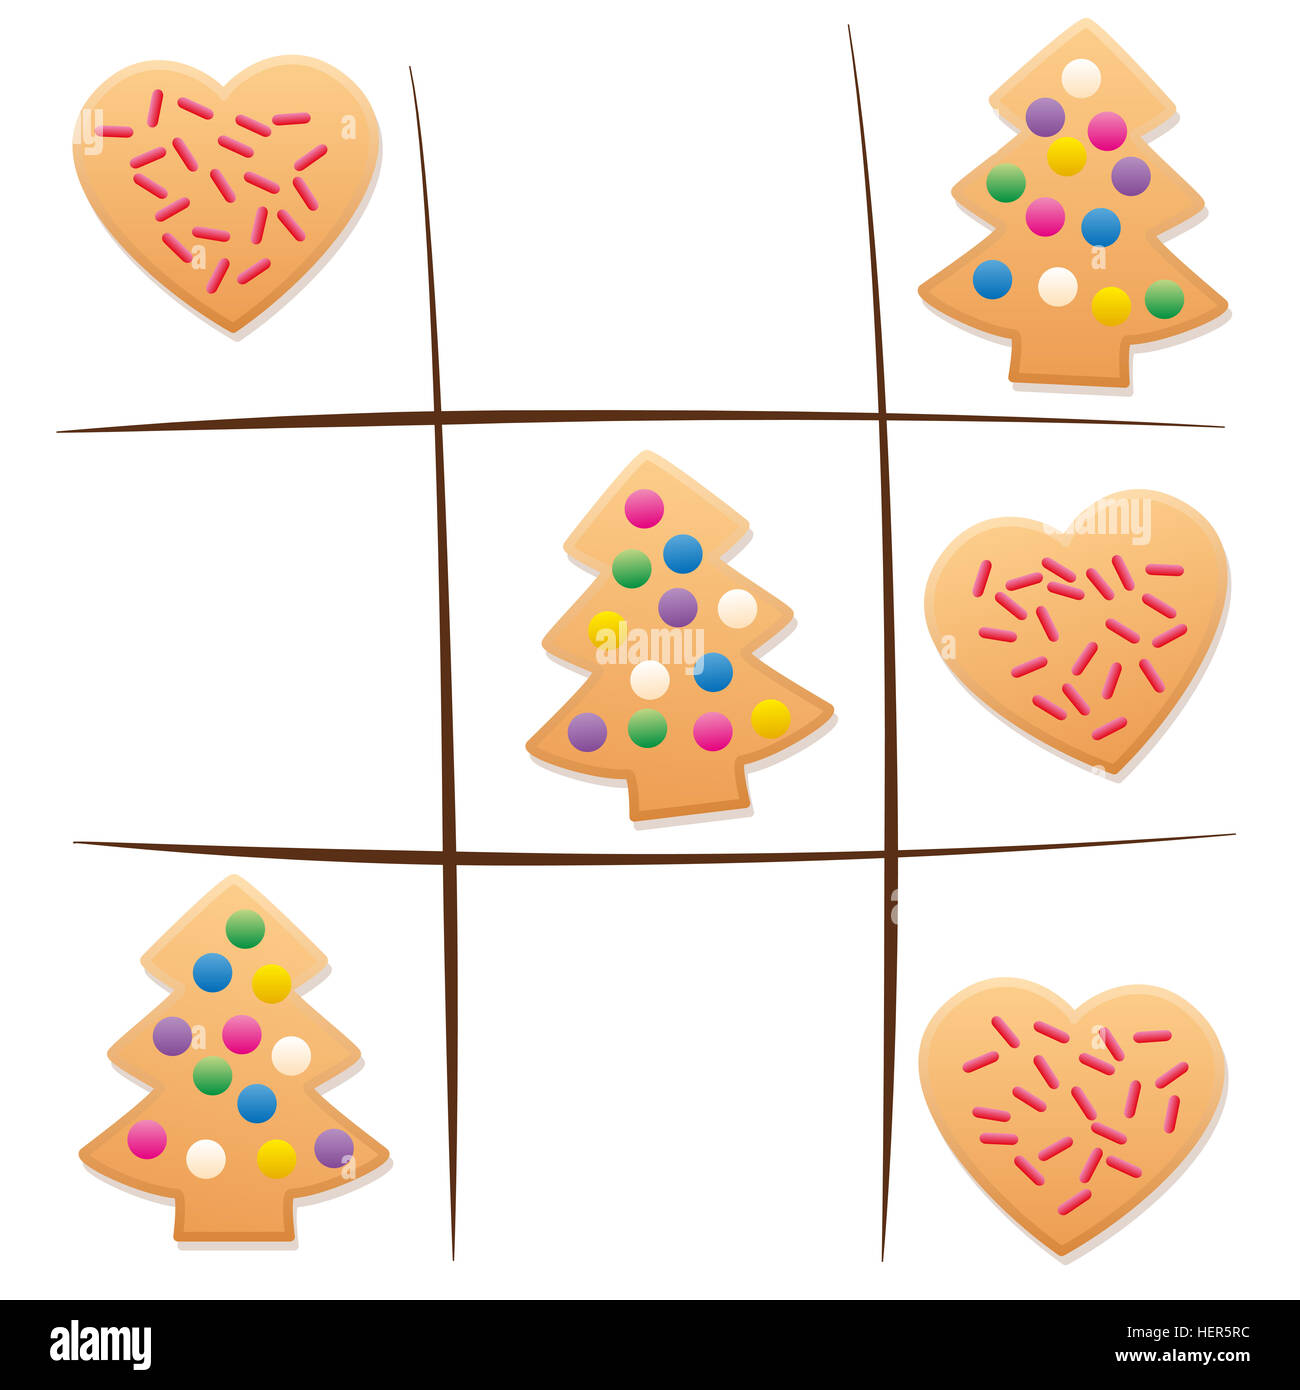 Avanzi di cookie - riproduzione di tic tac toe dopo Natale. Foto Stock